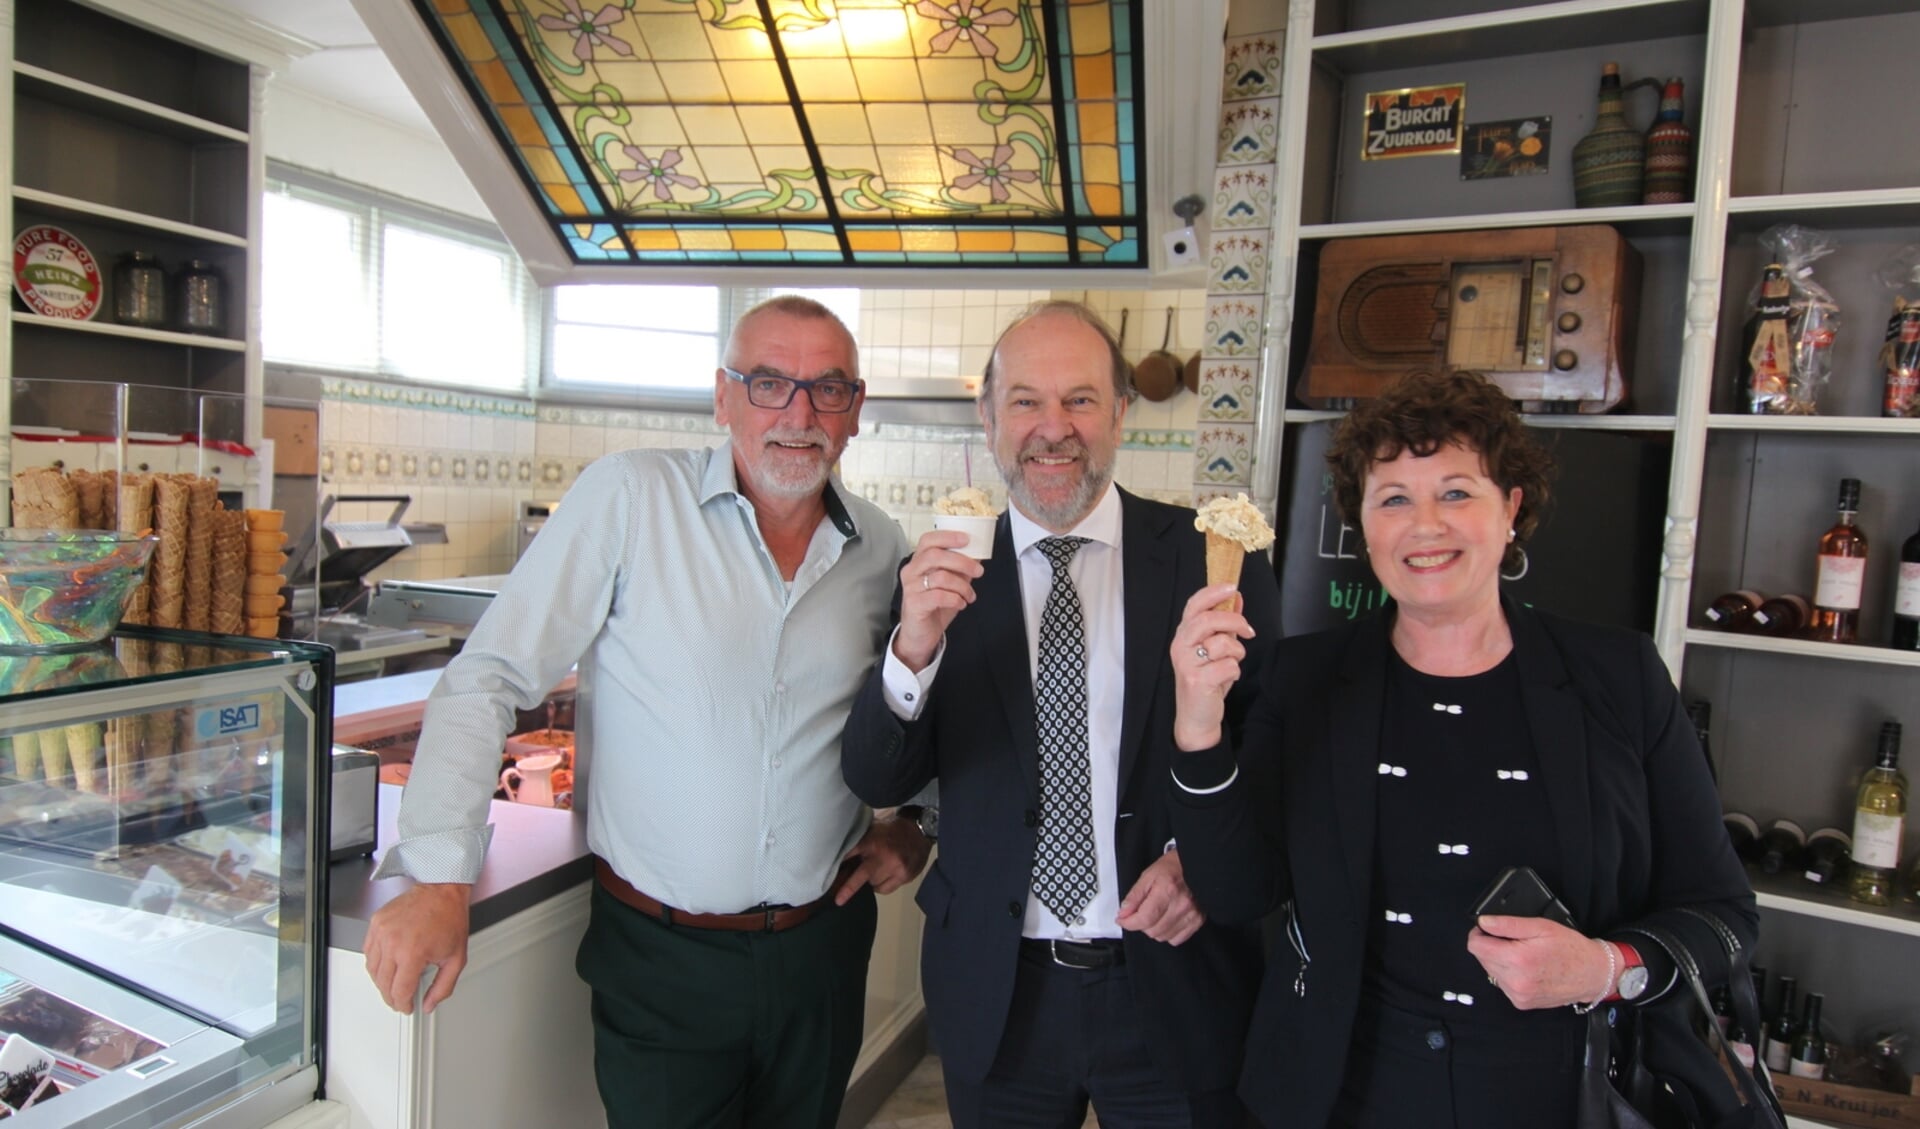 De burgemeesters Blase (midden) en Kompier lieten hun ijsje prima smaken.